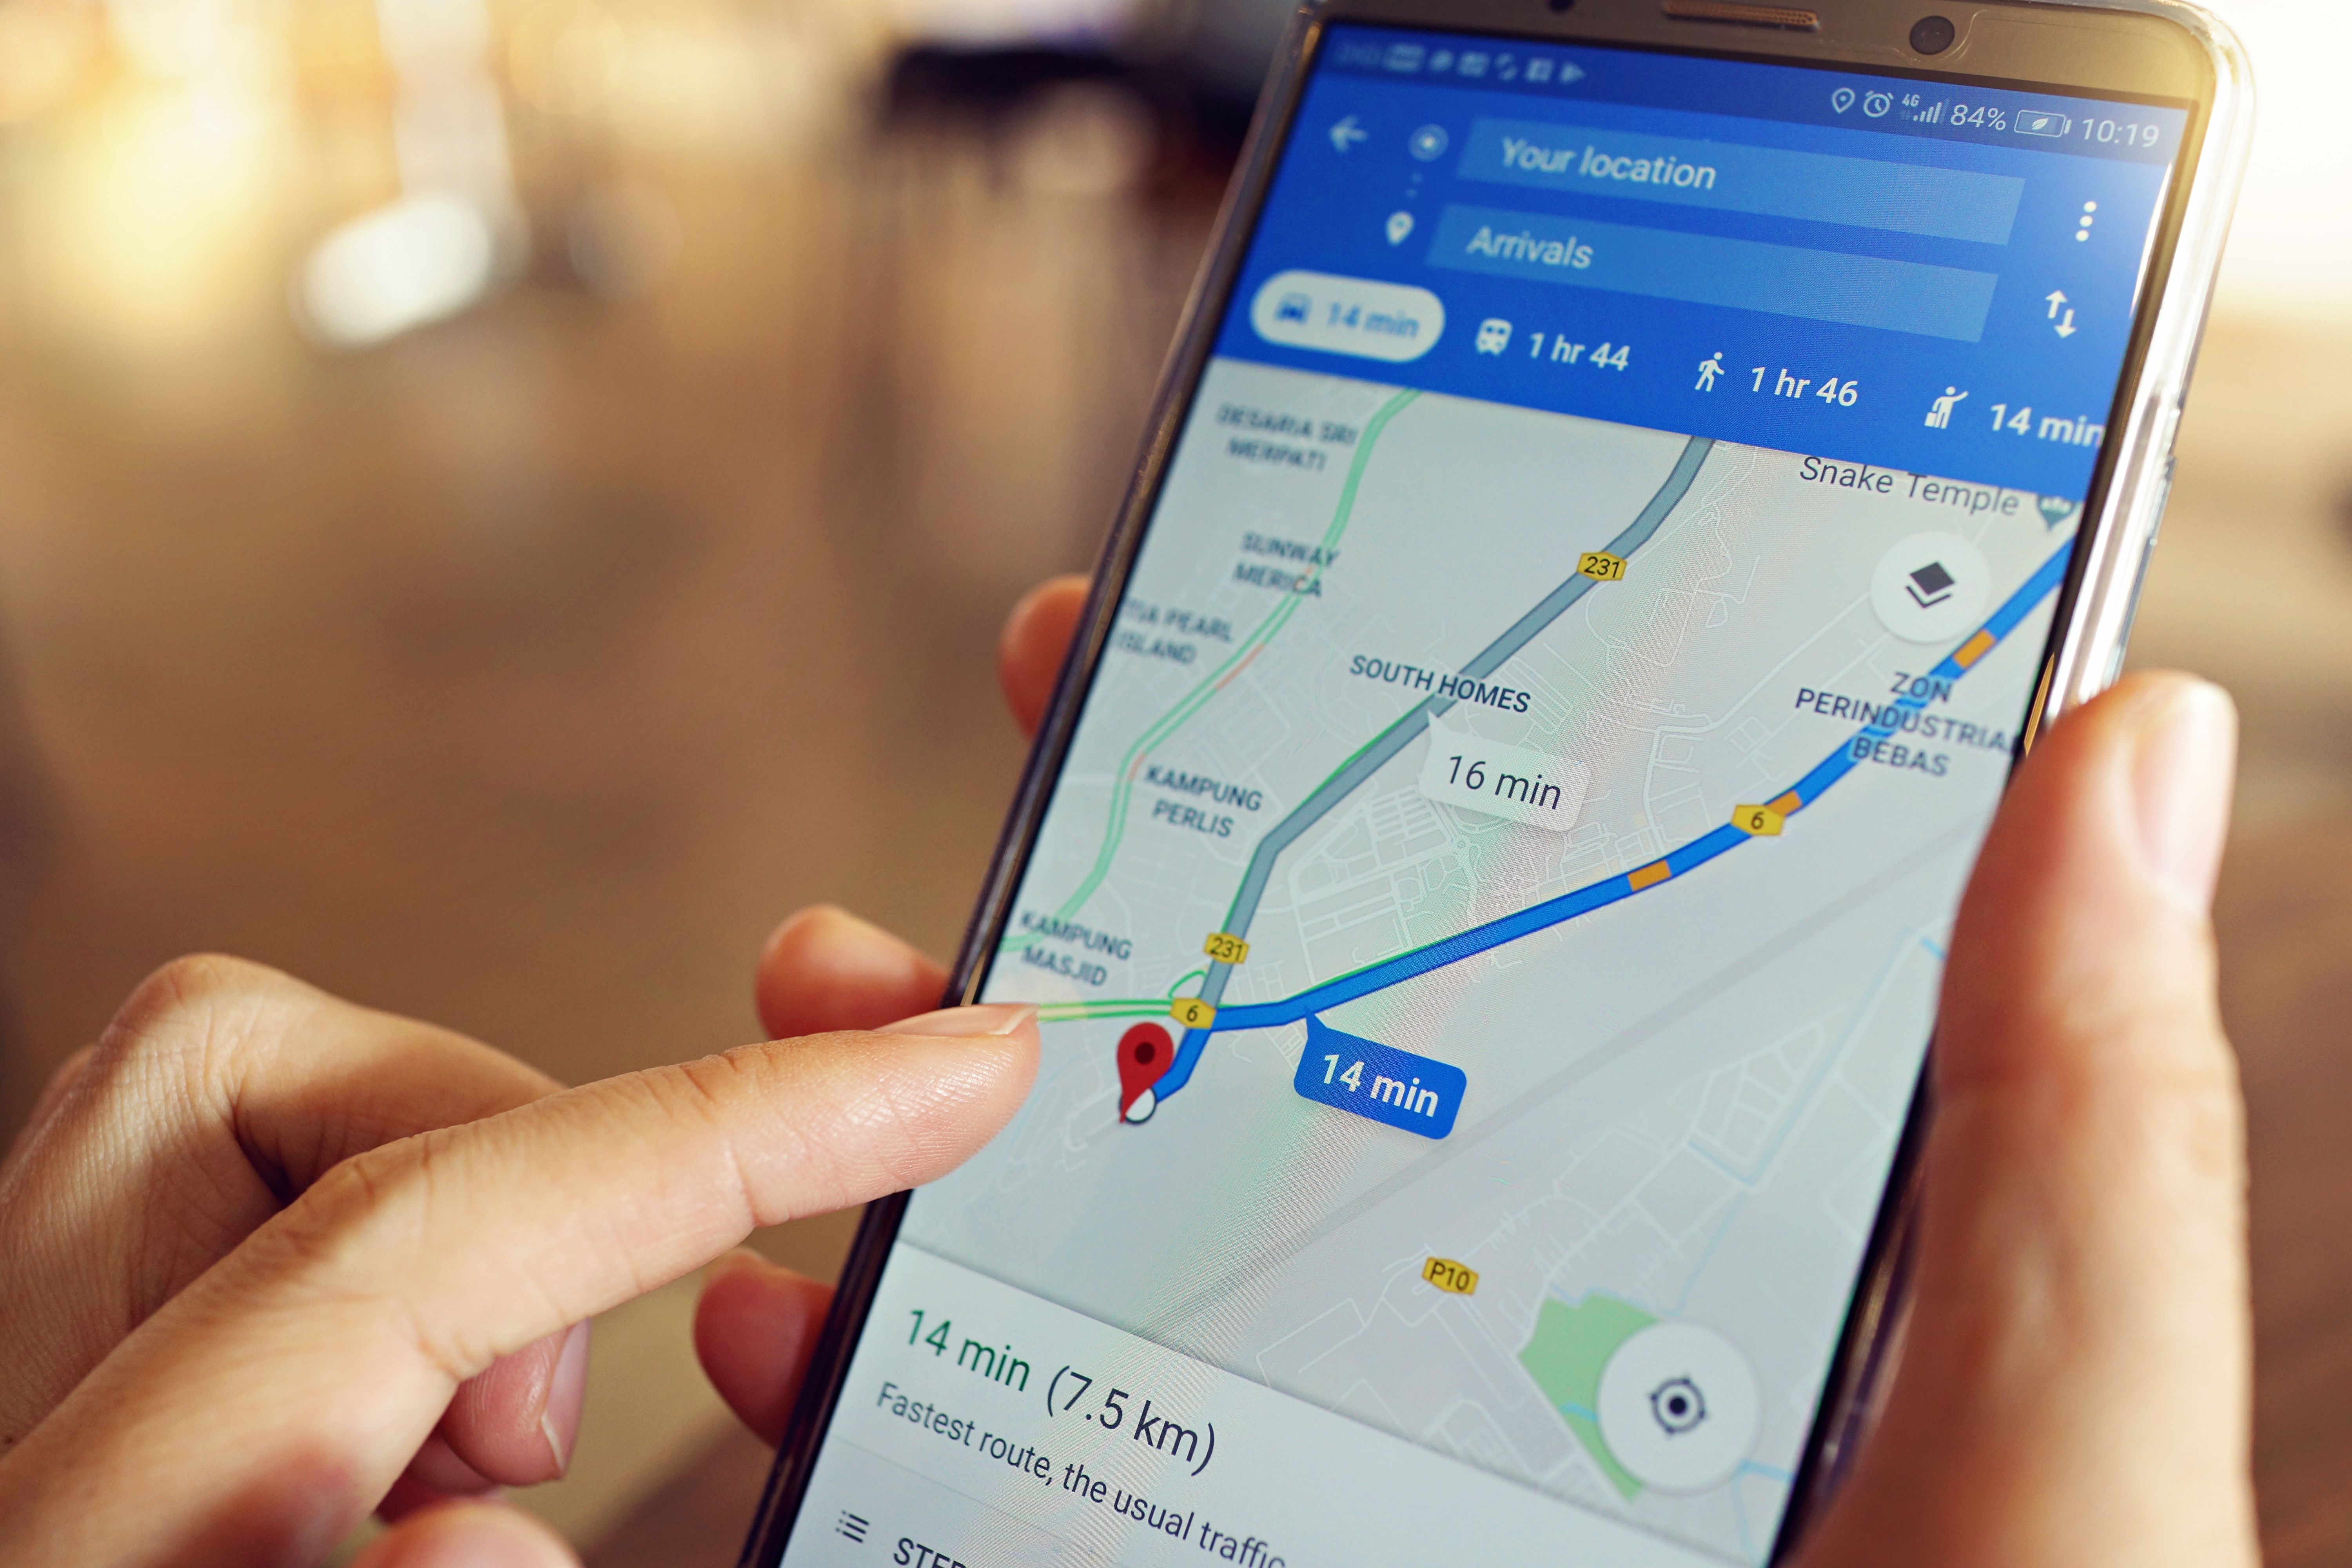 Google Maps: Как да изтеглиш карти на телефона си, за да ги използваш, когато нямаш интернет (офлайн)?